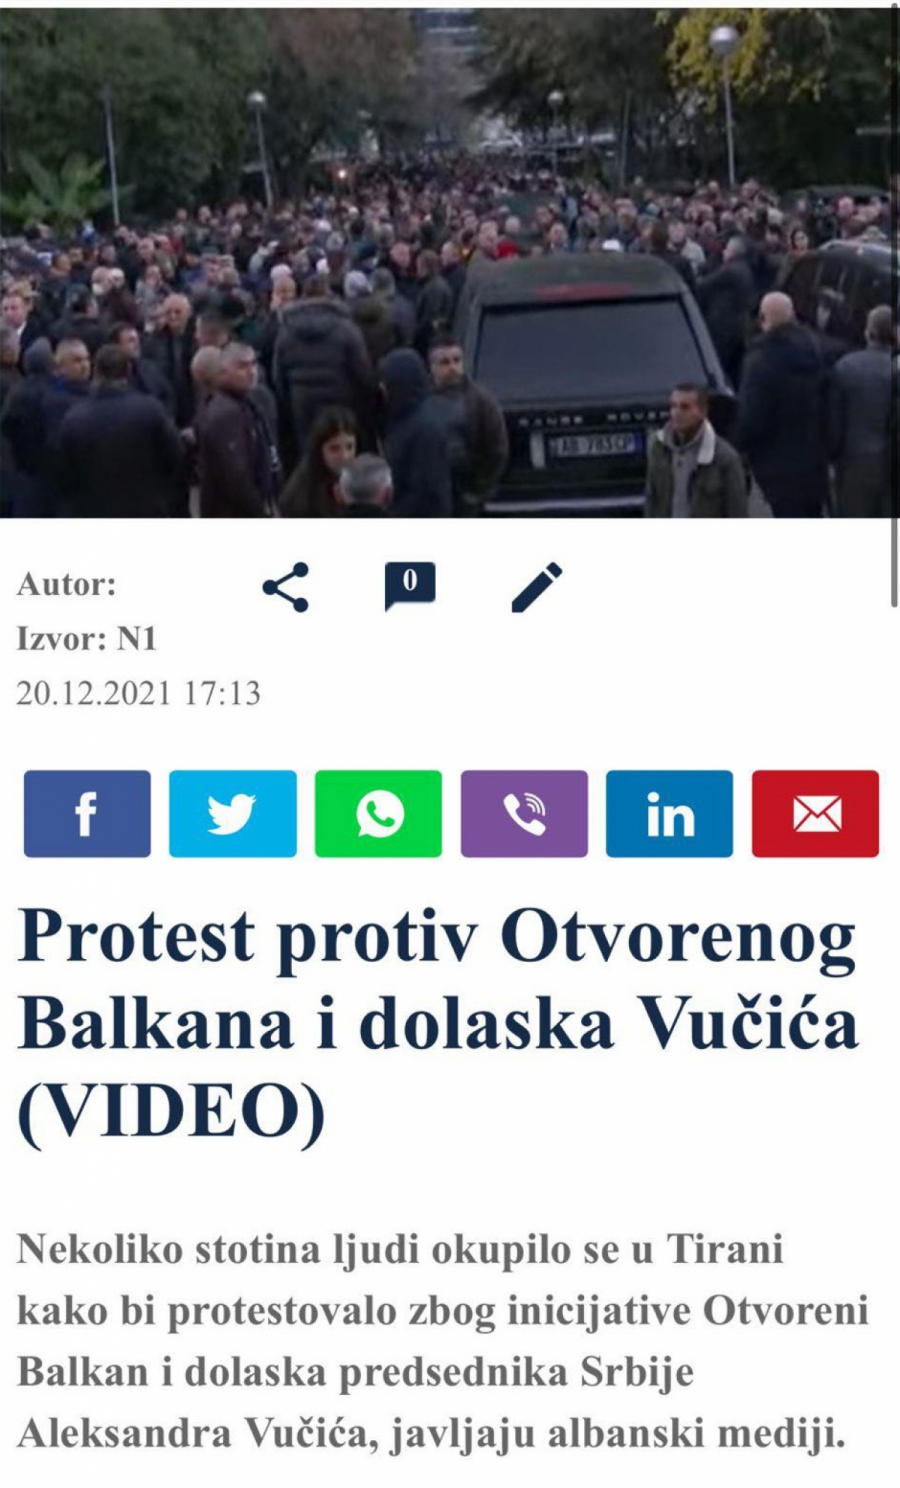 SKANDAL! Đilasovi mediji ne vide zapaljene zastave Srbije, već izveštavaju o mirnim albanskim demonstrantima koji ne vole Vučića